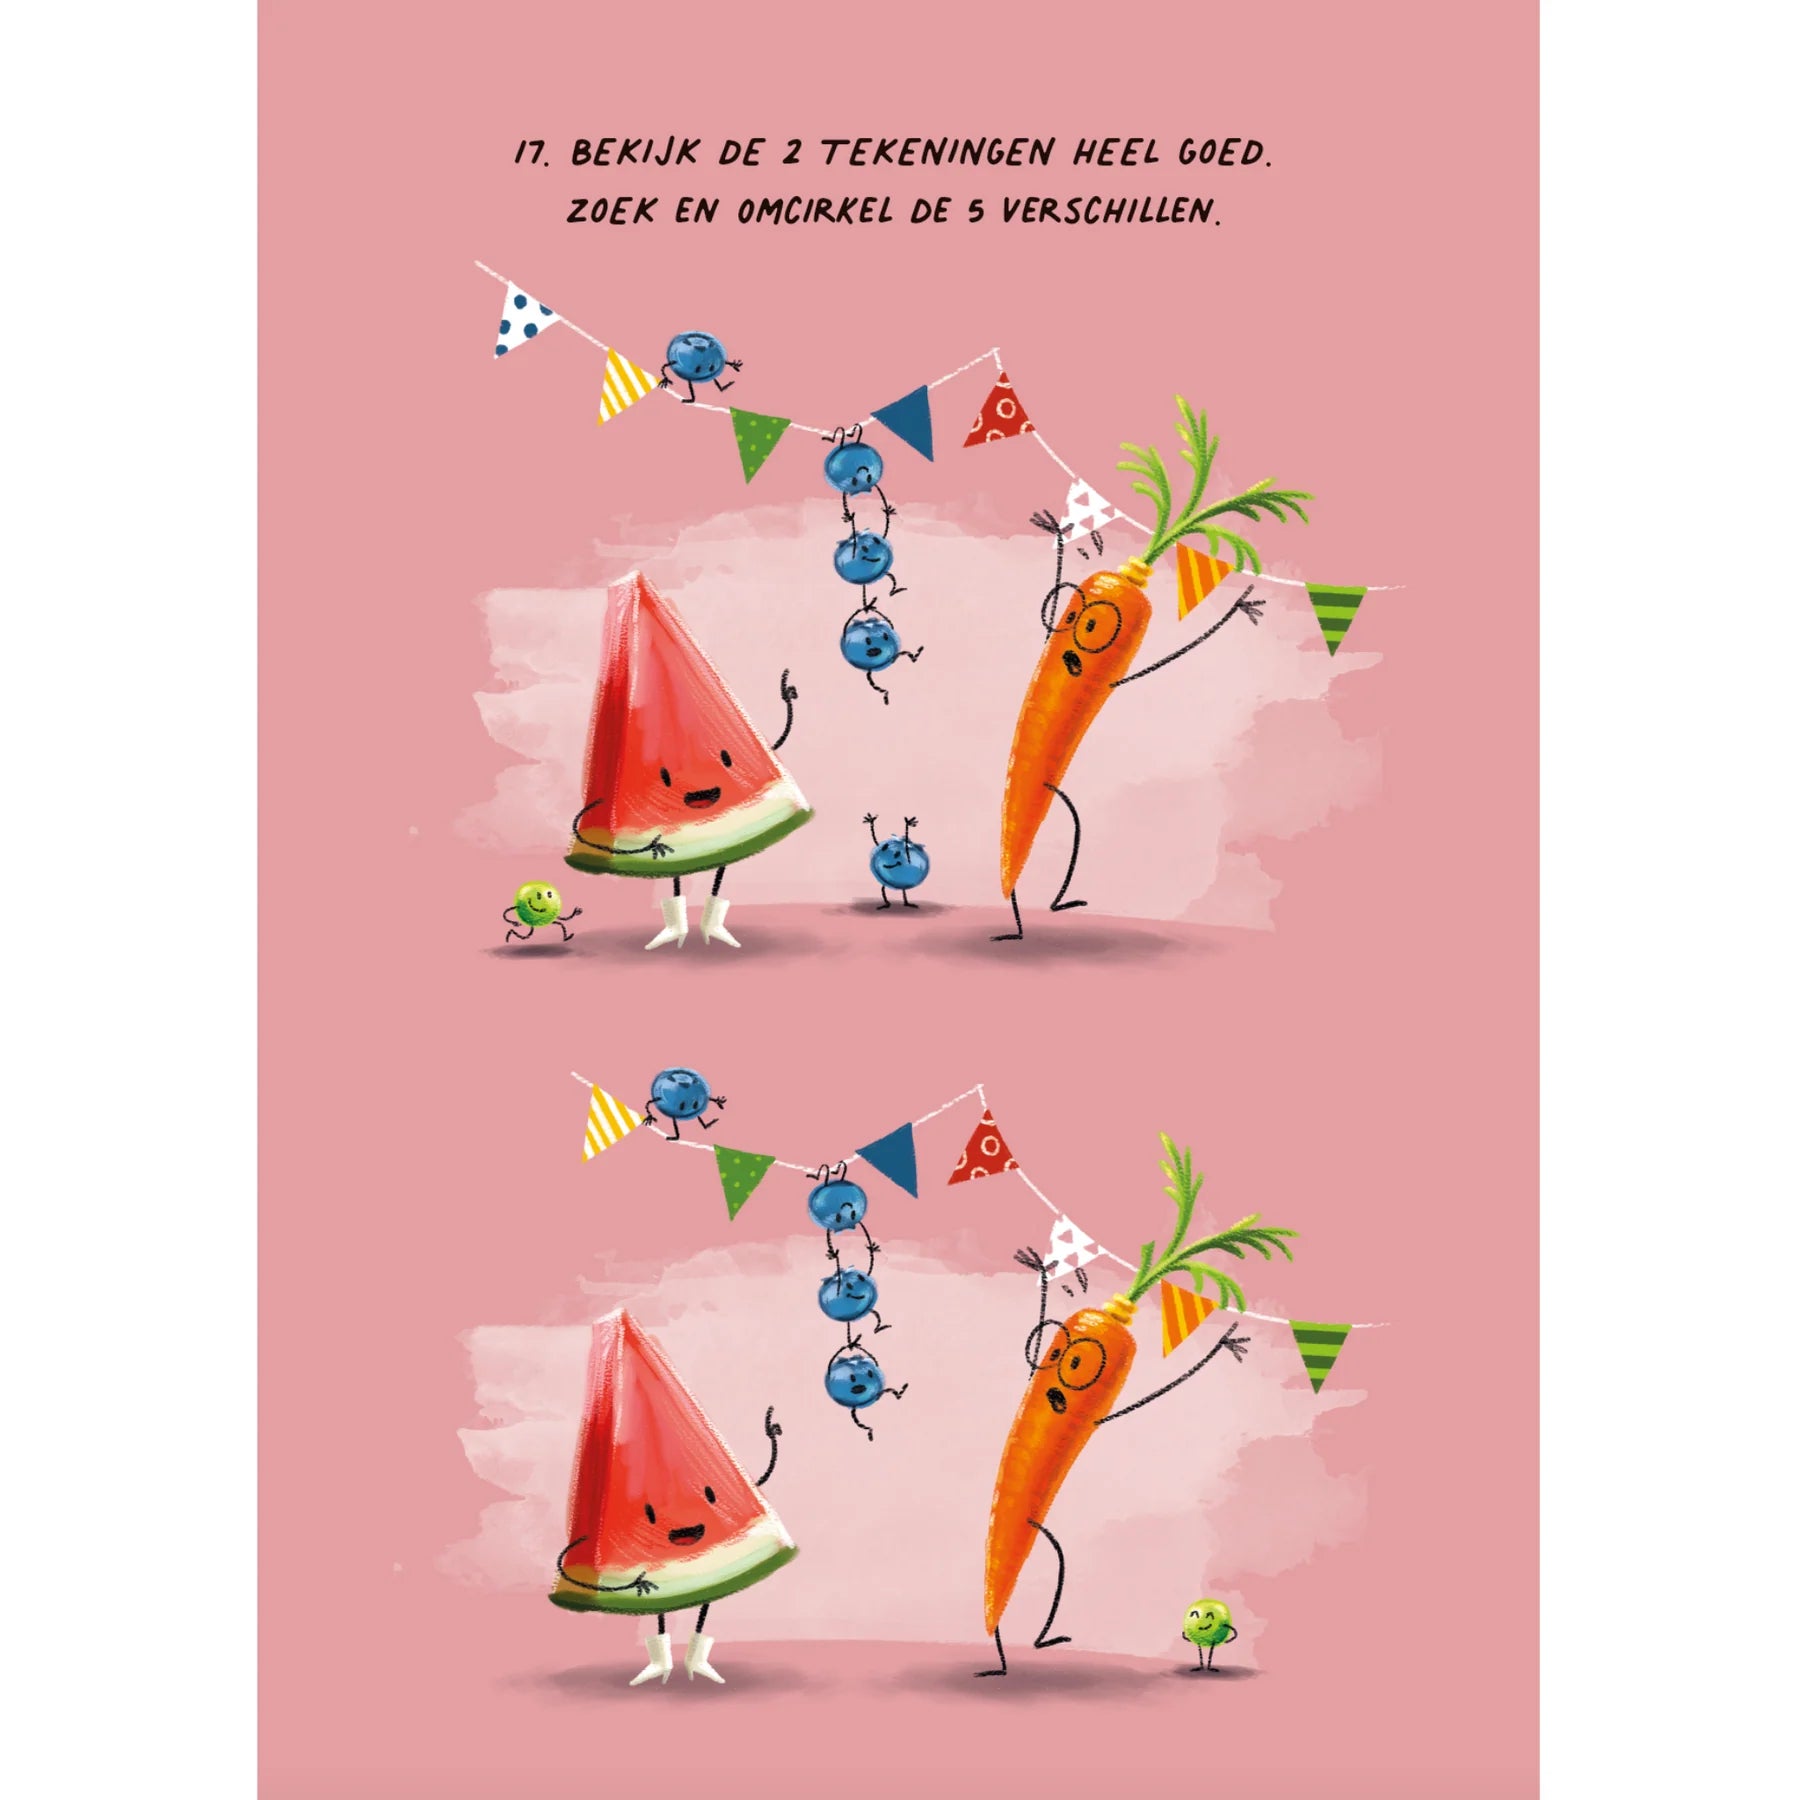 Höngry - boek - mimi watermeloen kleur & doeboek met stickers